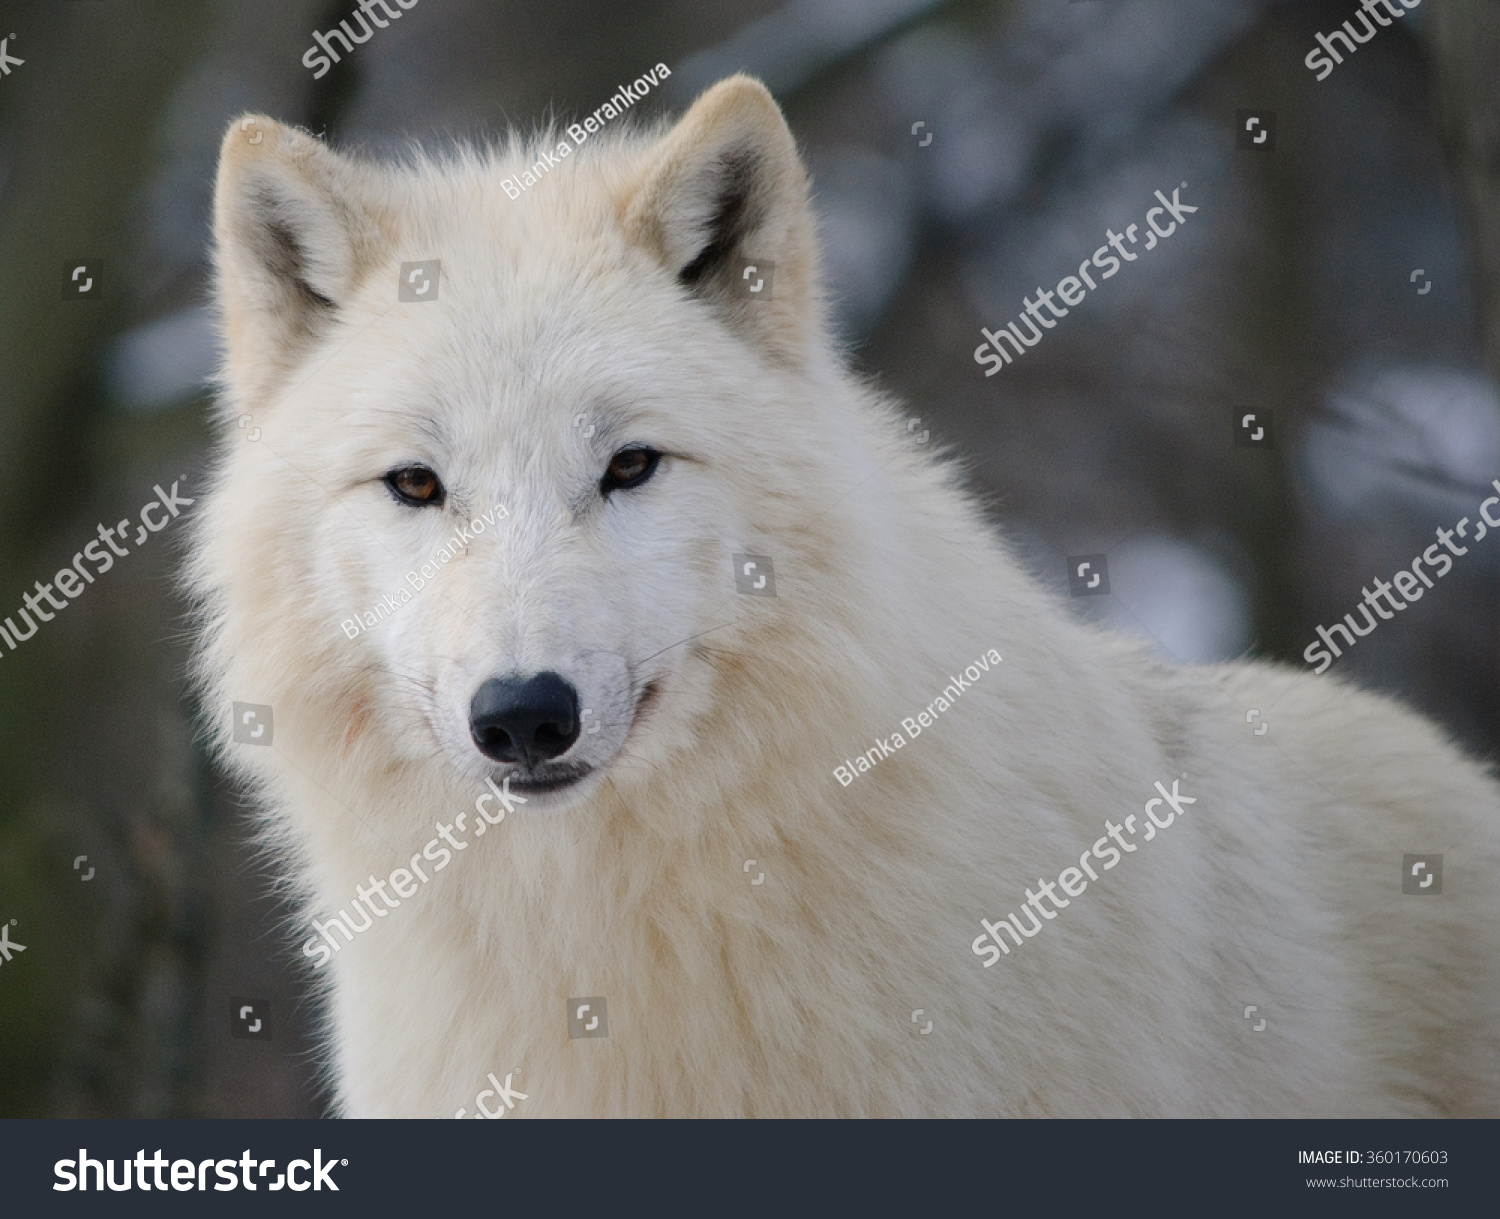 Whitewolfbrazil